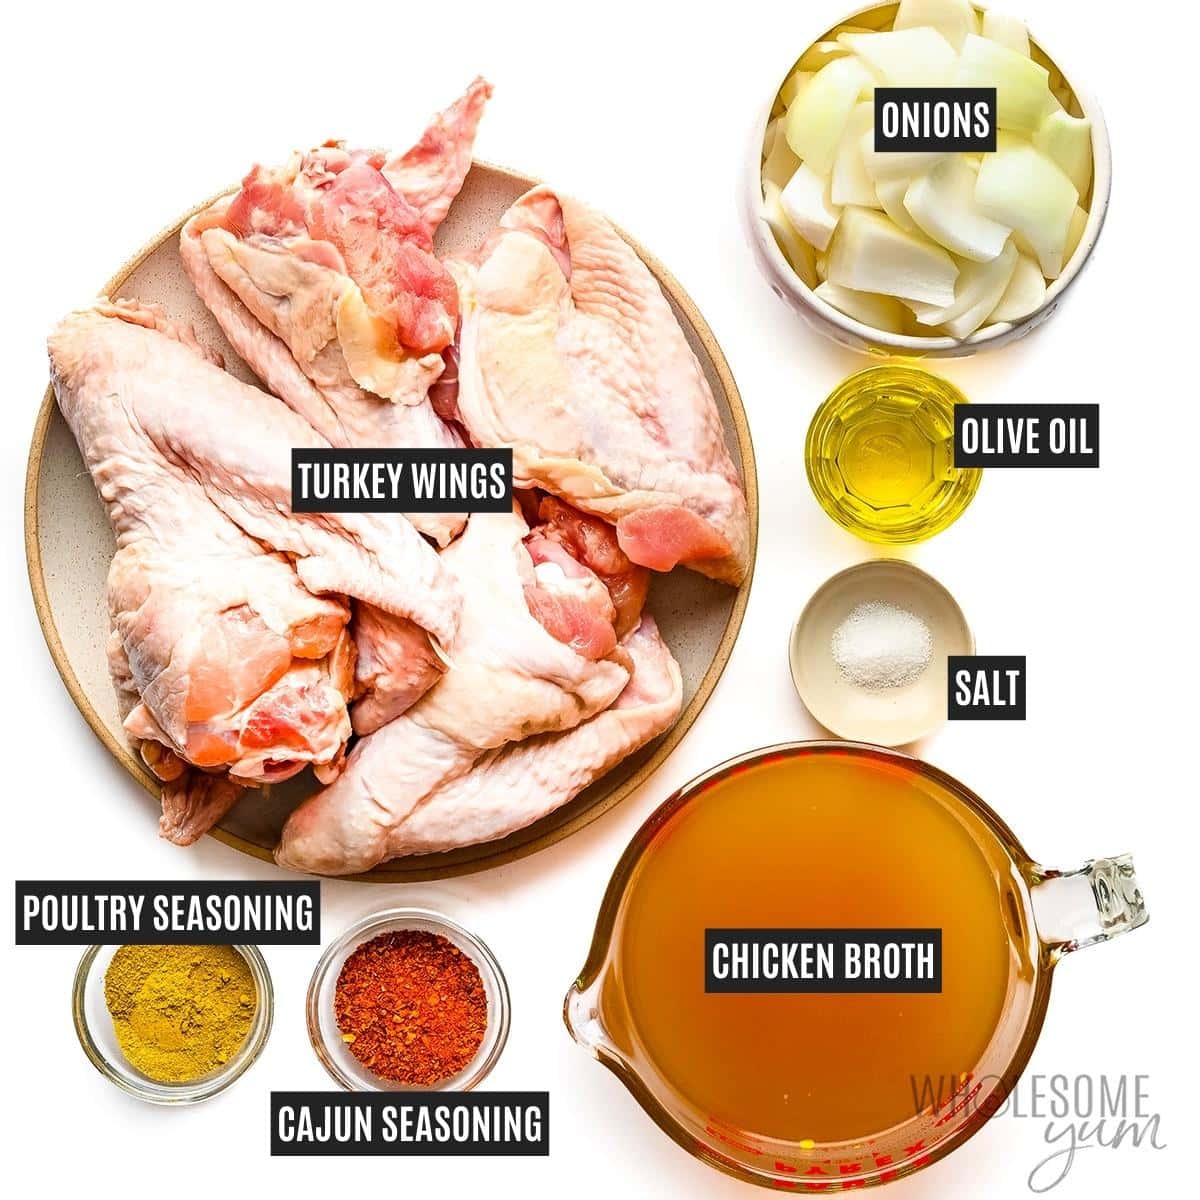 Turkey wings recipe ingredients.